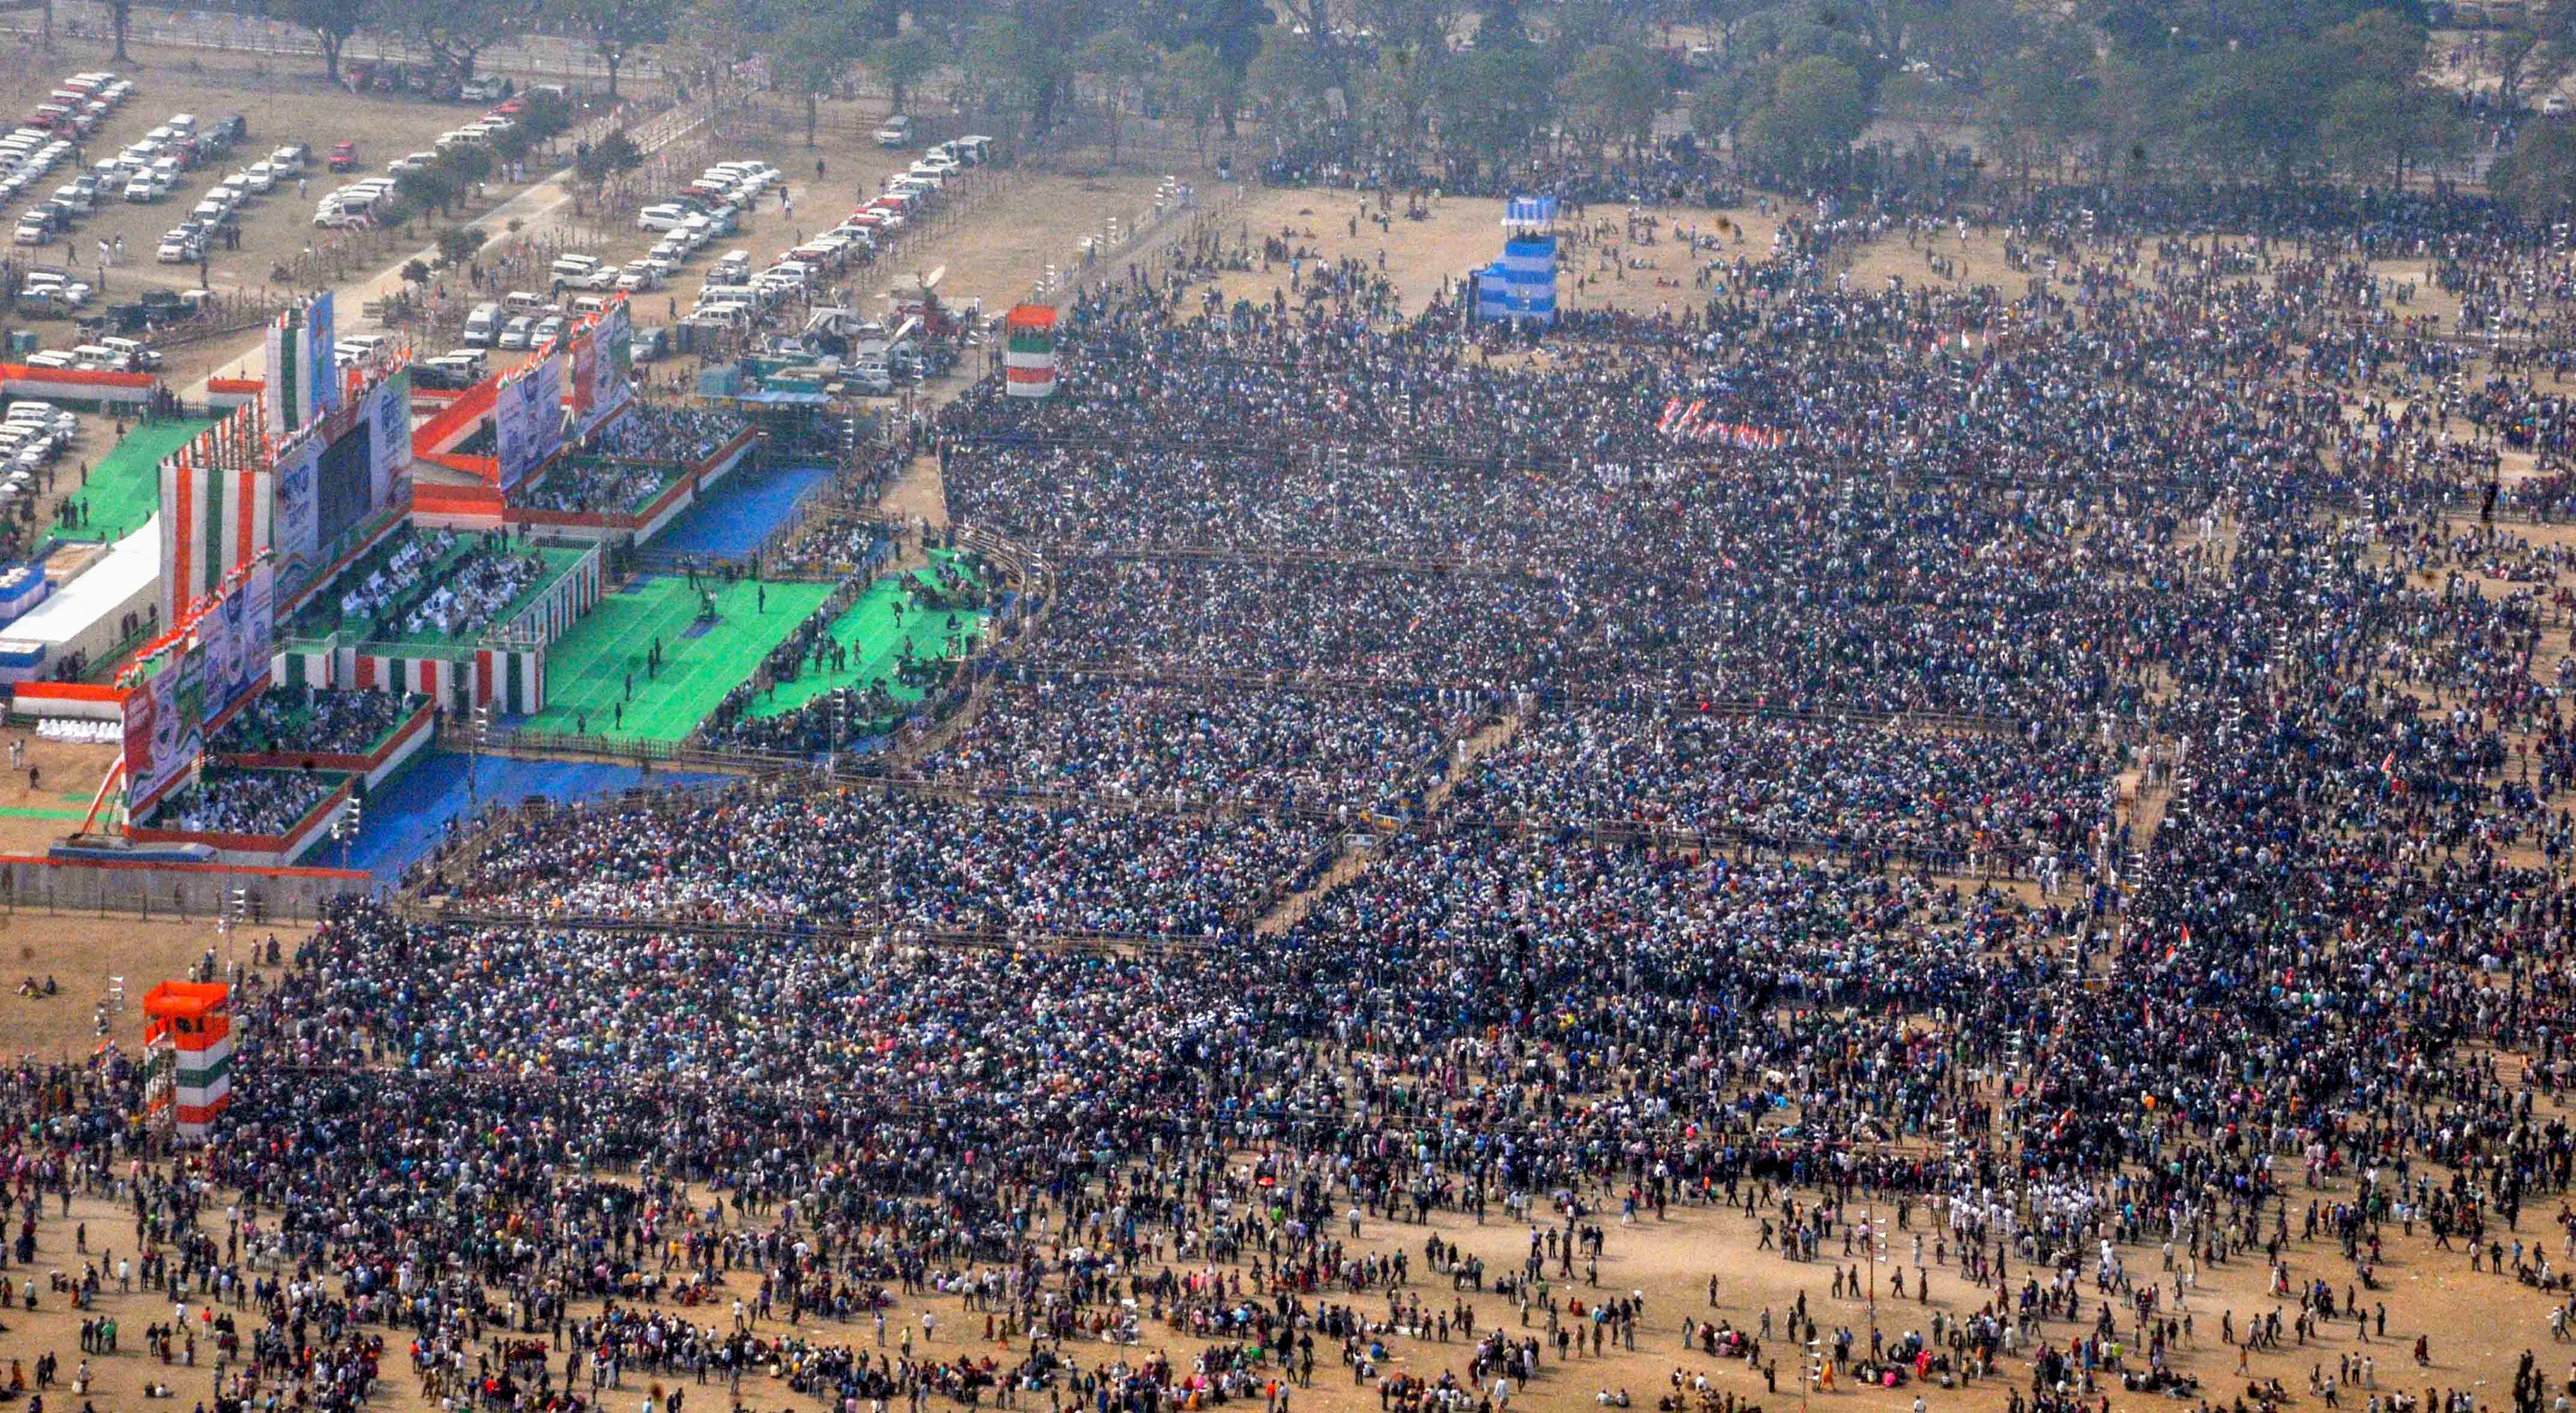  A view of the crowd at Trinamool Congress (TMC)'s mega rally in Kolkata. (Image: PTI) 